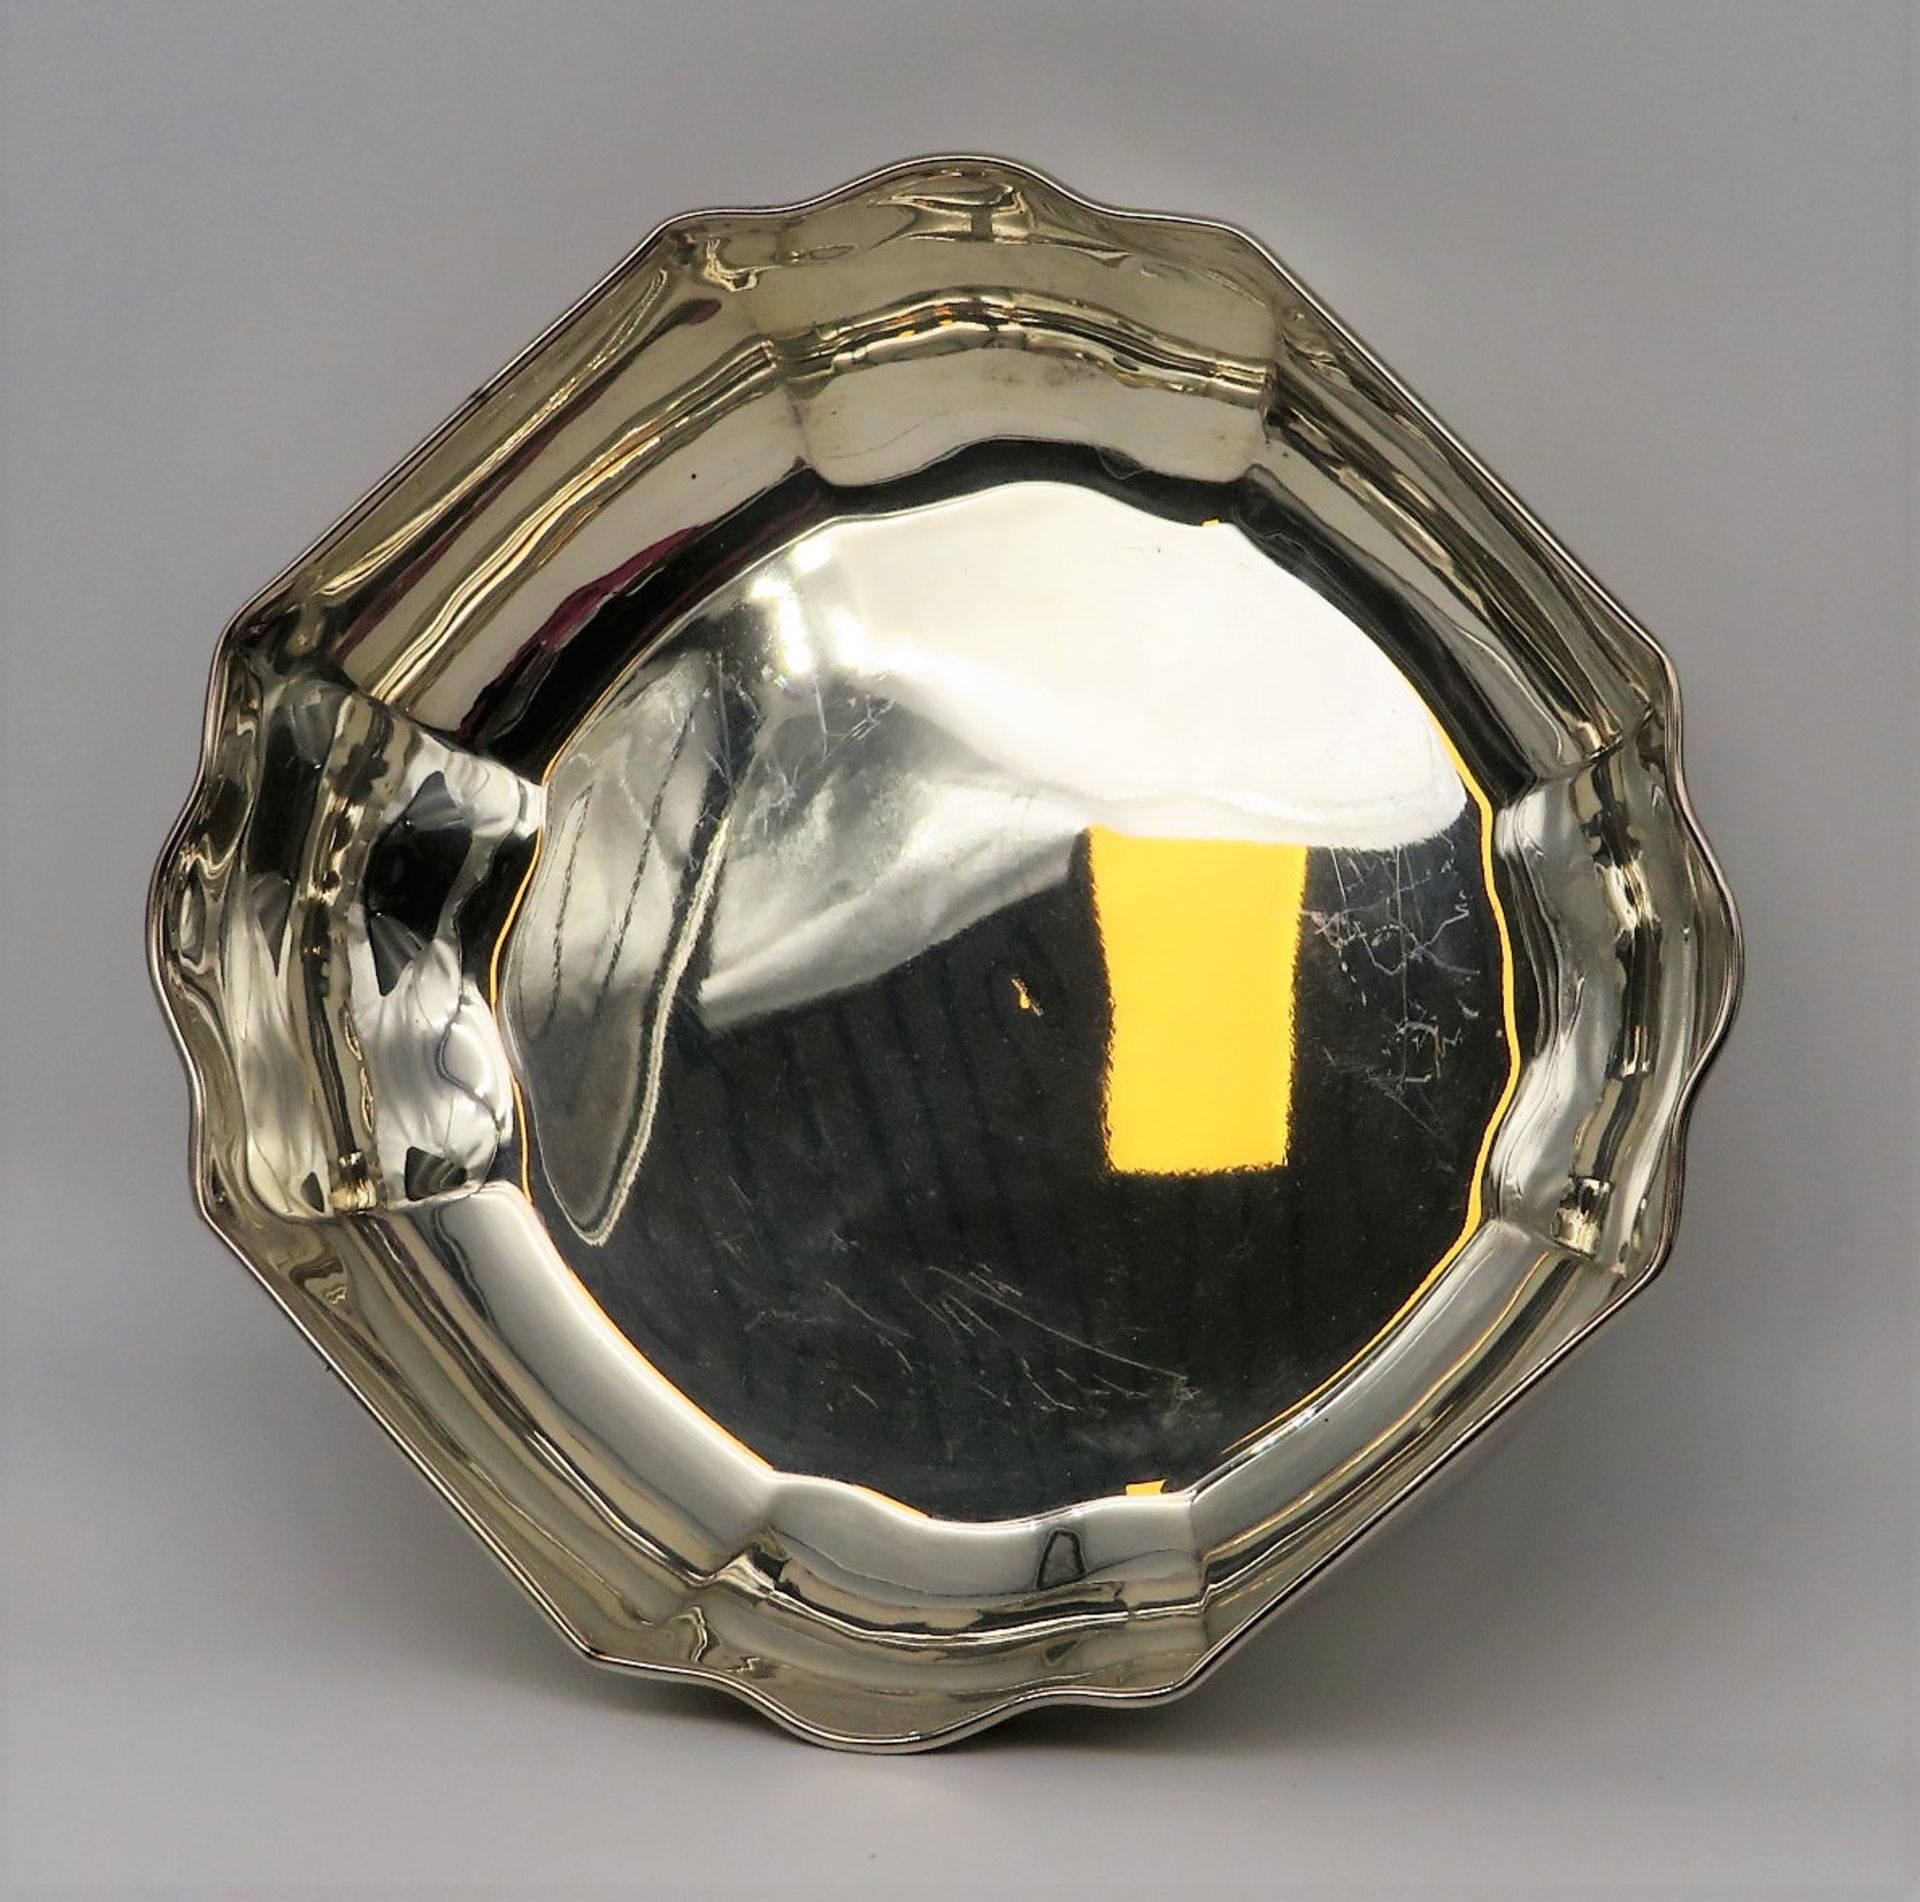 Schale, 1000er Silber, gepunzt, 490 g, h 7 cm, d 24 cm. - Image 2 of 2